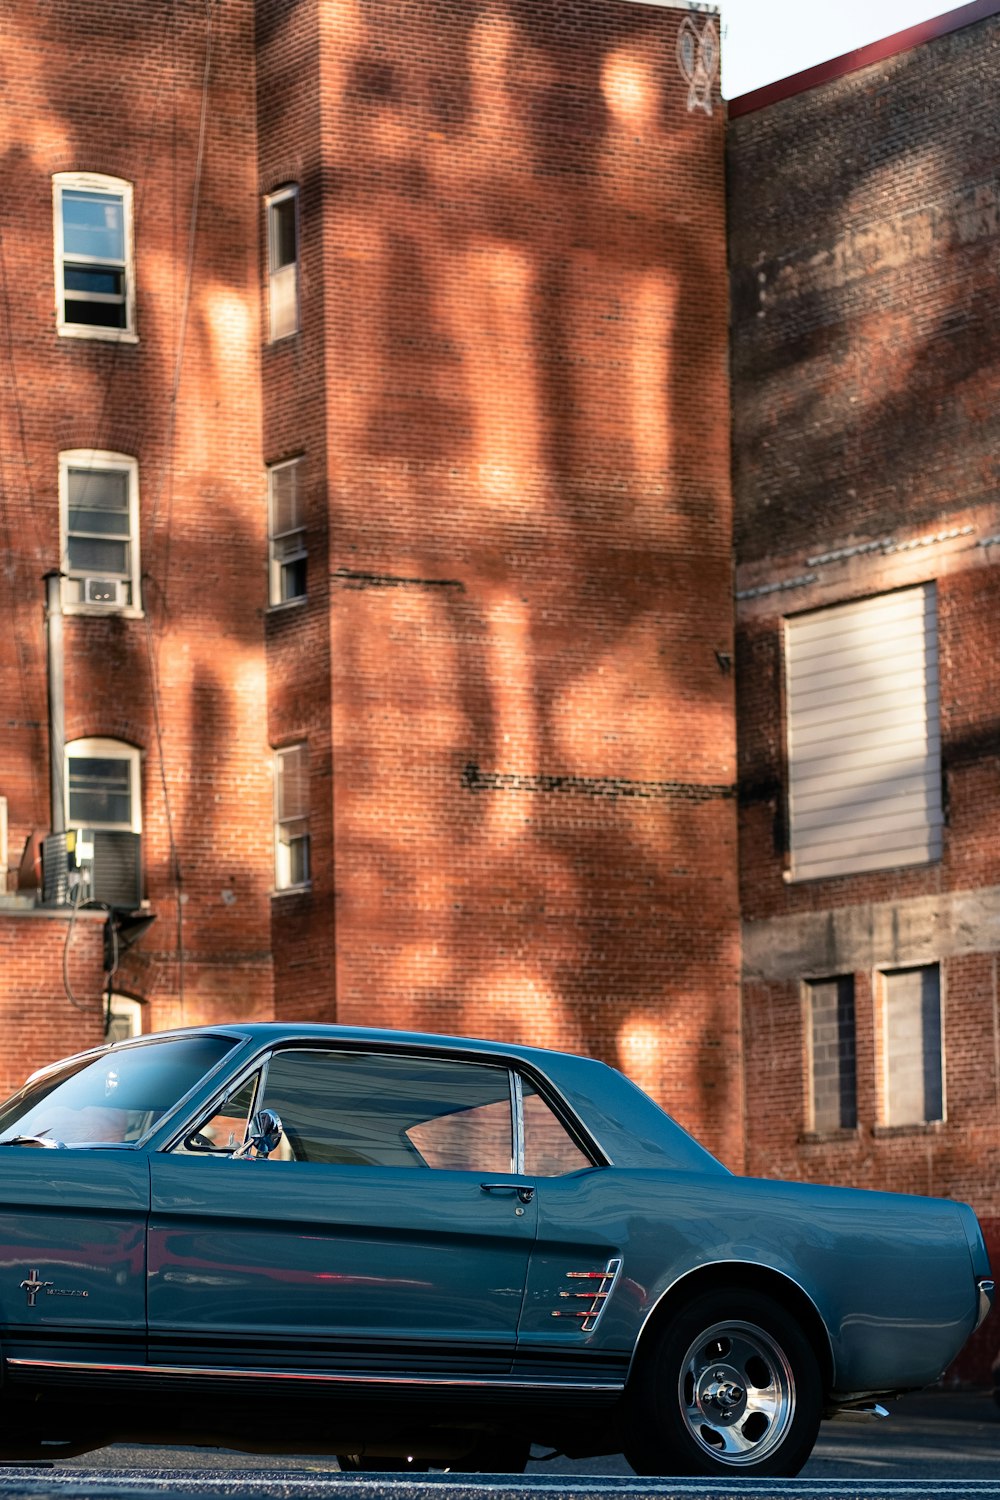 日中、茶色のレンガ造りの建物の脇に駐車された青いクーペ